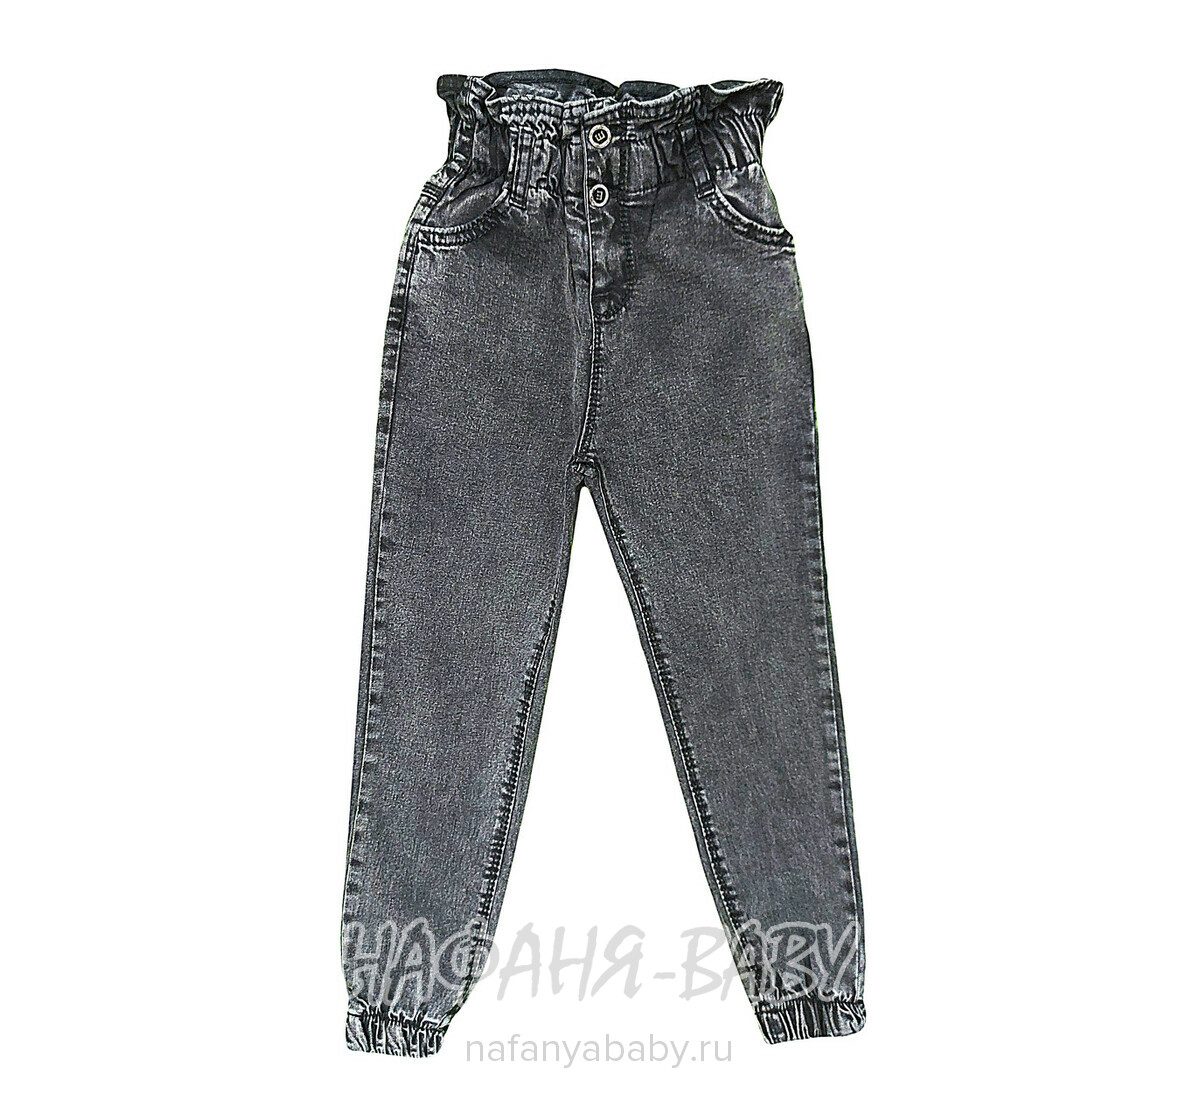 Джинсы подростковые ELEYSA Jeans арт: 6106 для девочки 8-12 лет, оптом Турция